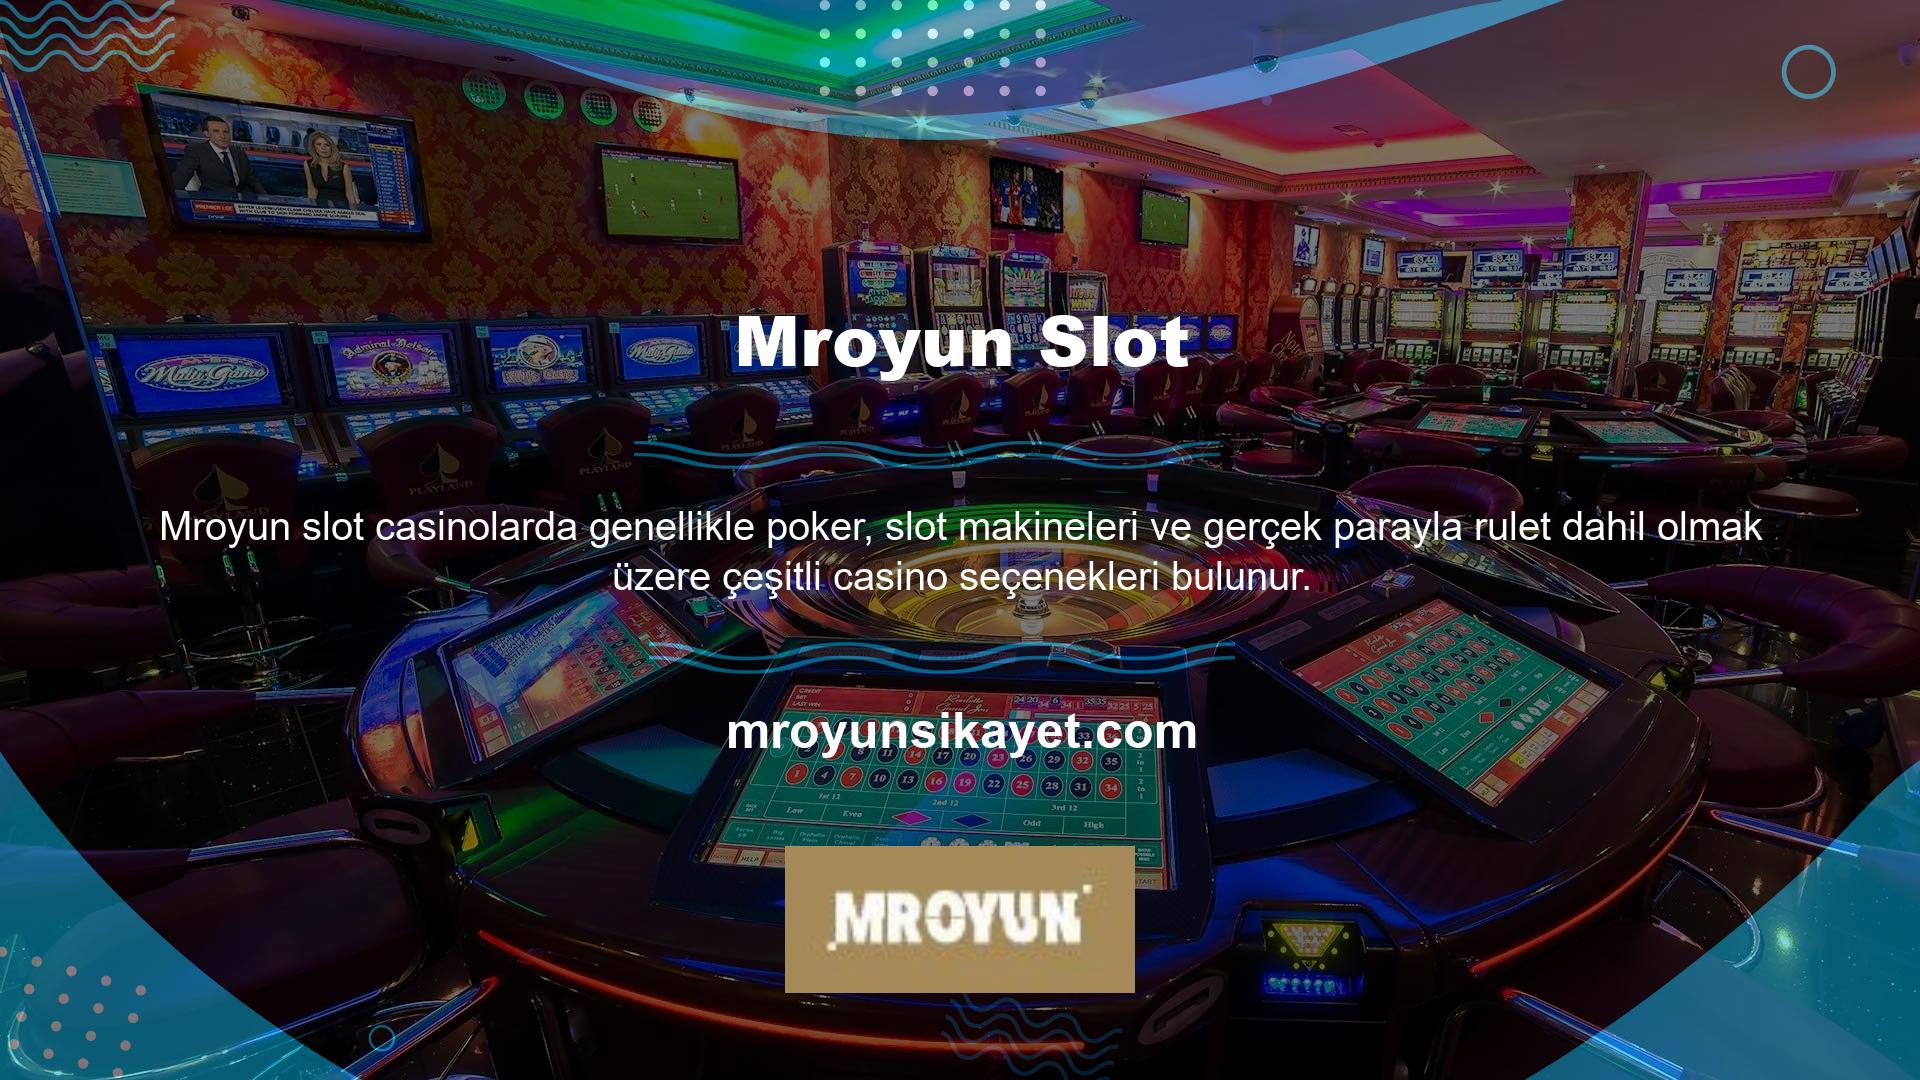 Çevrimiçi casinolar terimi aynı zamanda İnternetteki gerçek casino kuruluşlarını da ifade eder